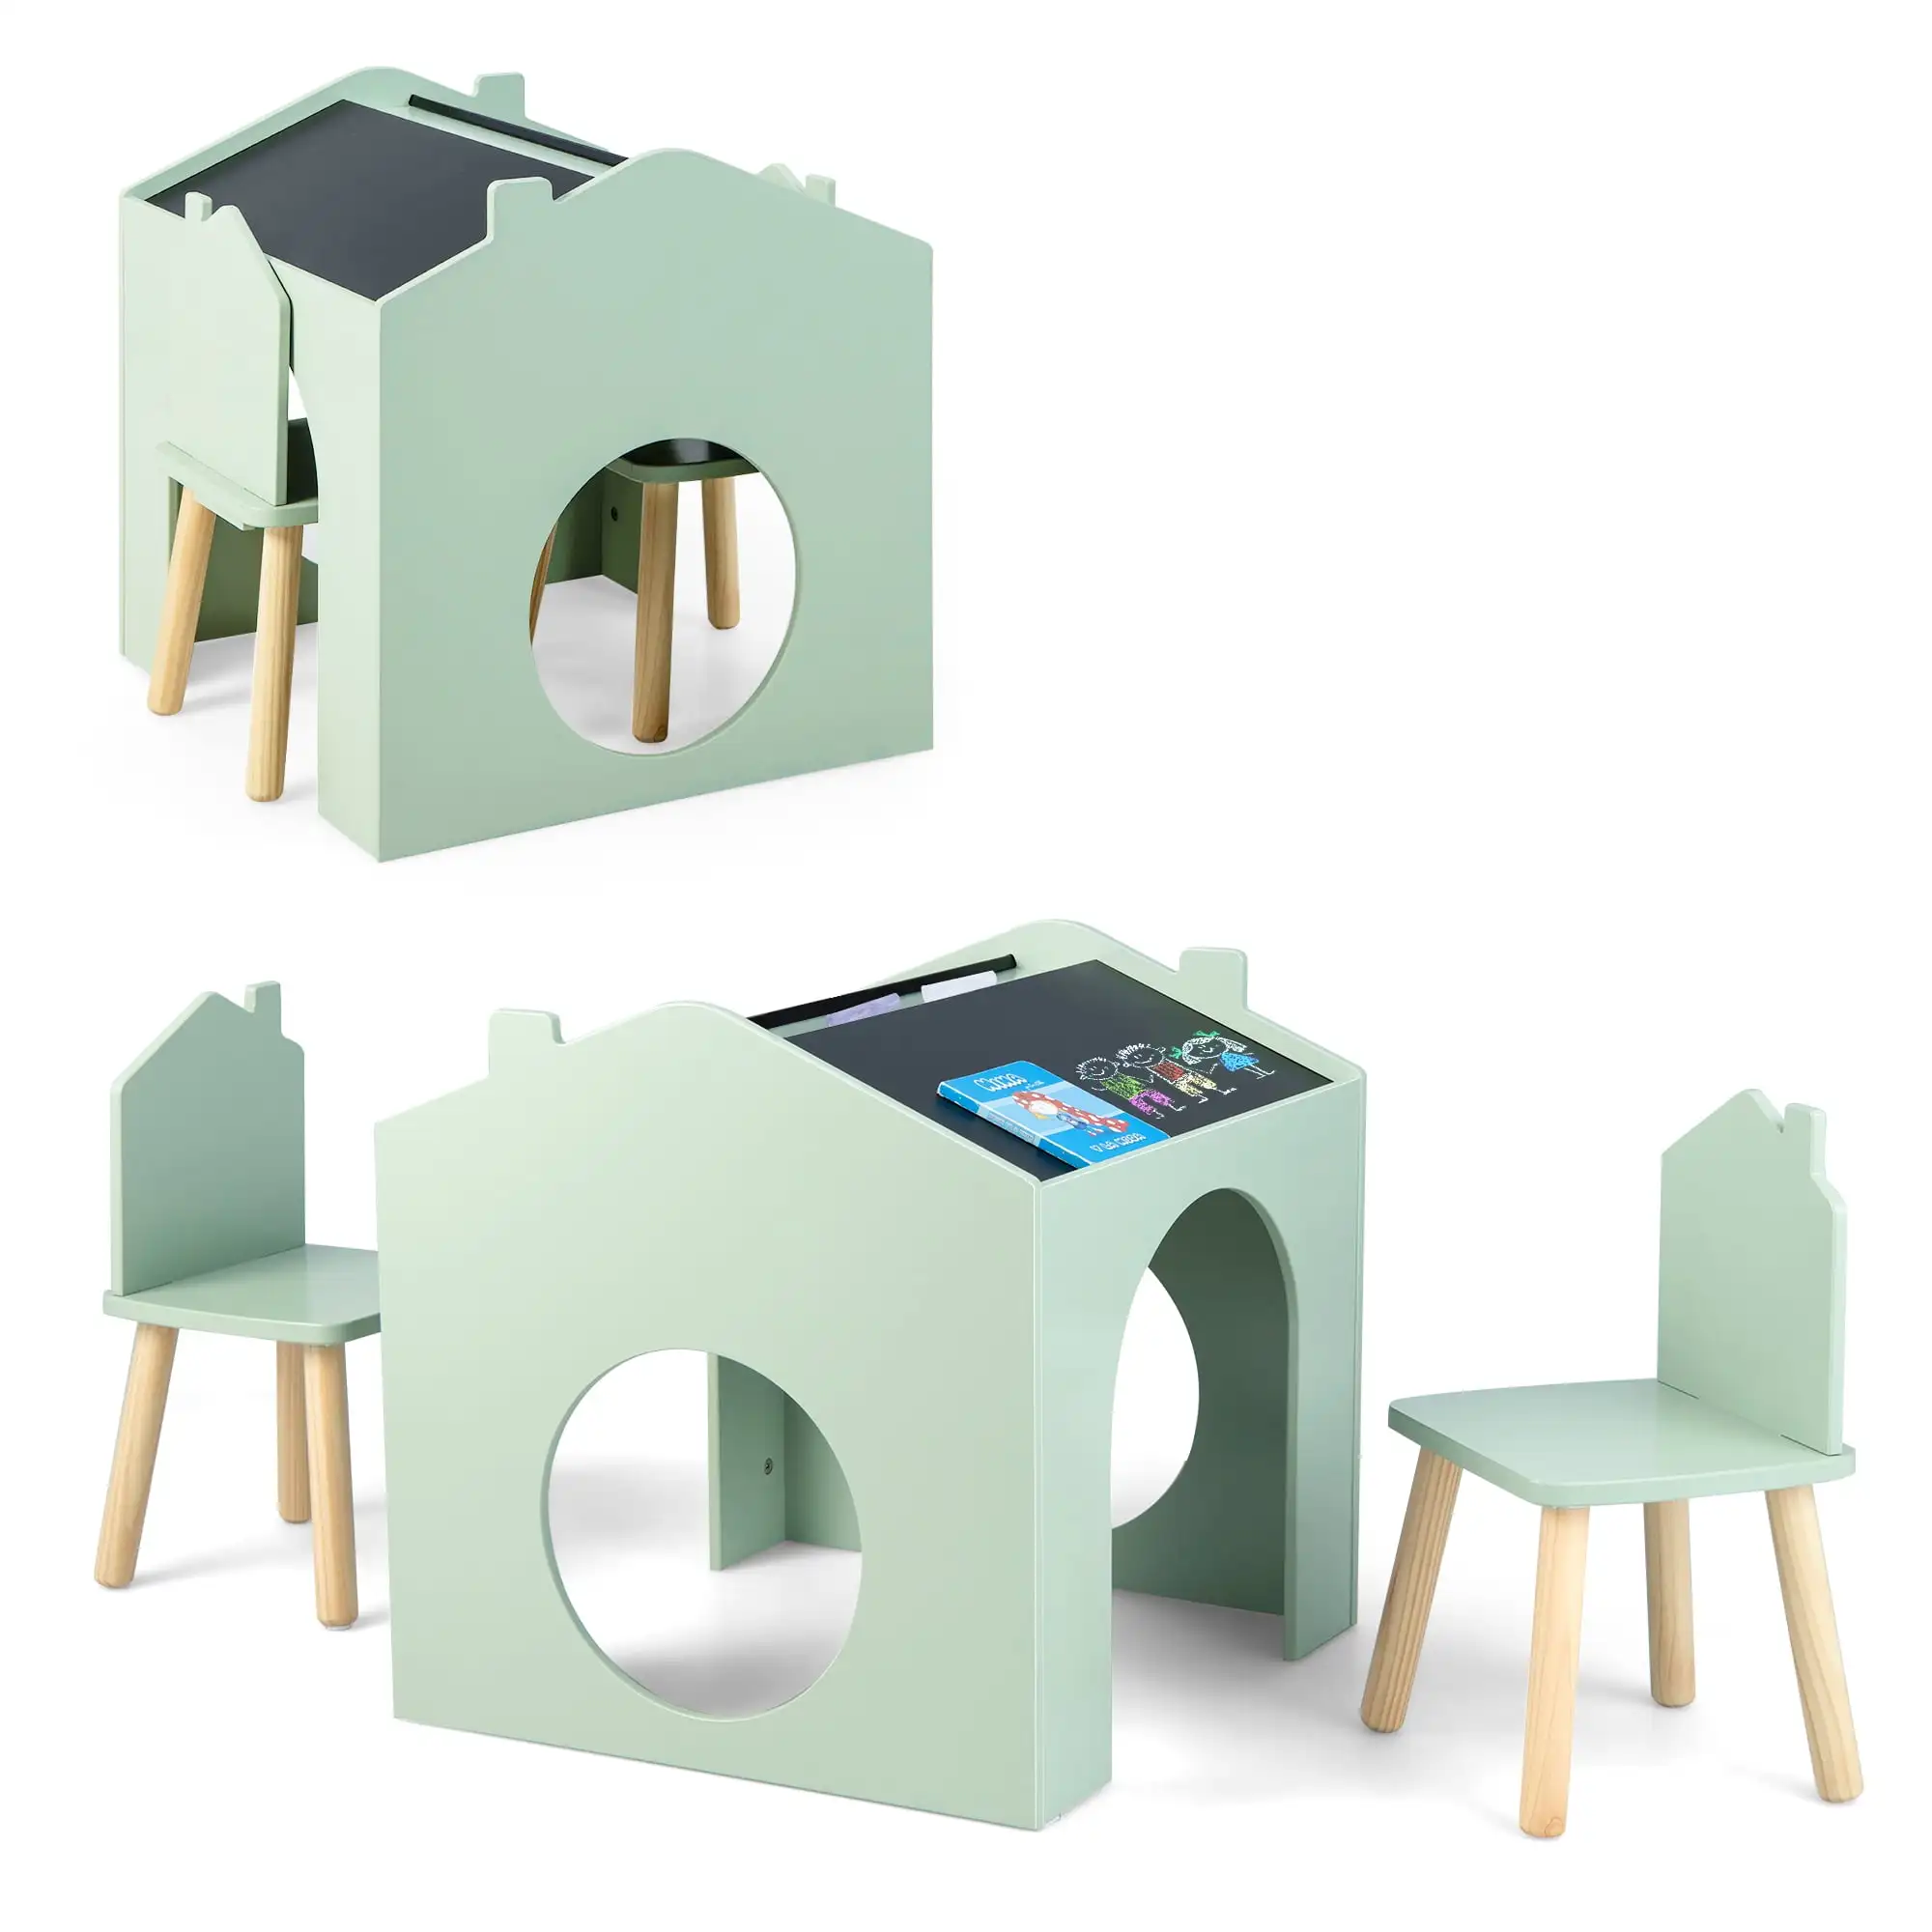 

Детский деревянный стол и стул Costway из 3 предметов с черной доской для рисования, чтения, зеленый